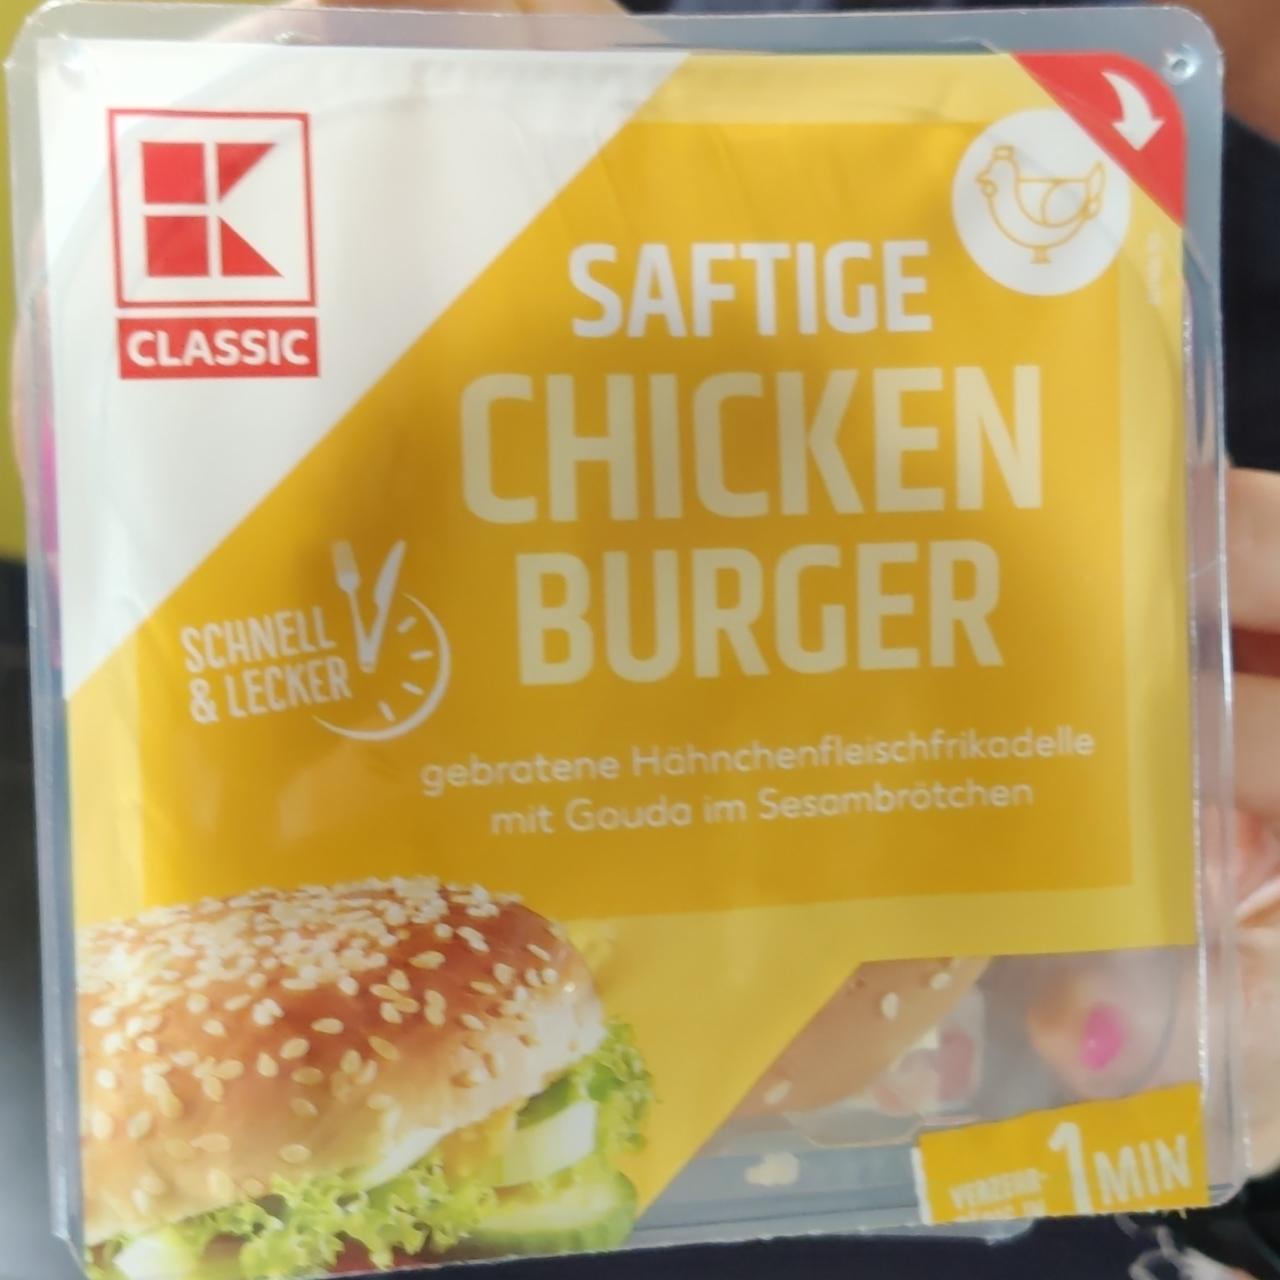 Фото - Бургер класичний з куркою Chicken Burger K-Classic